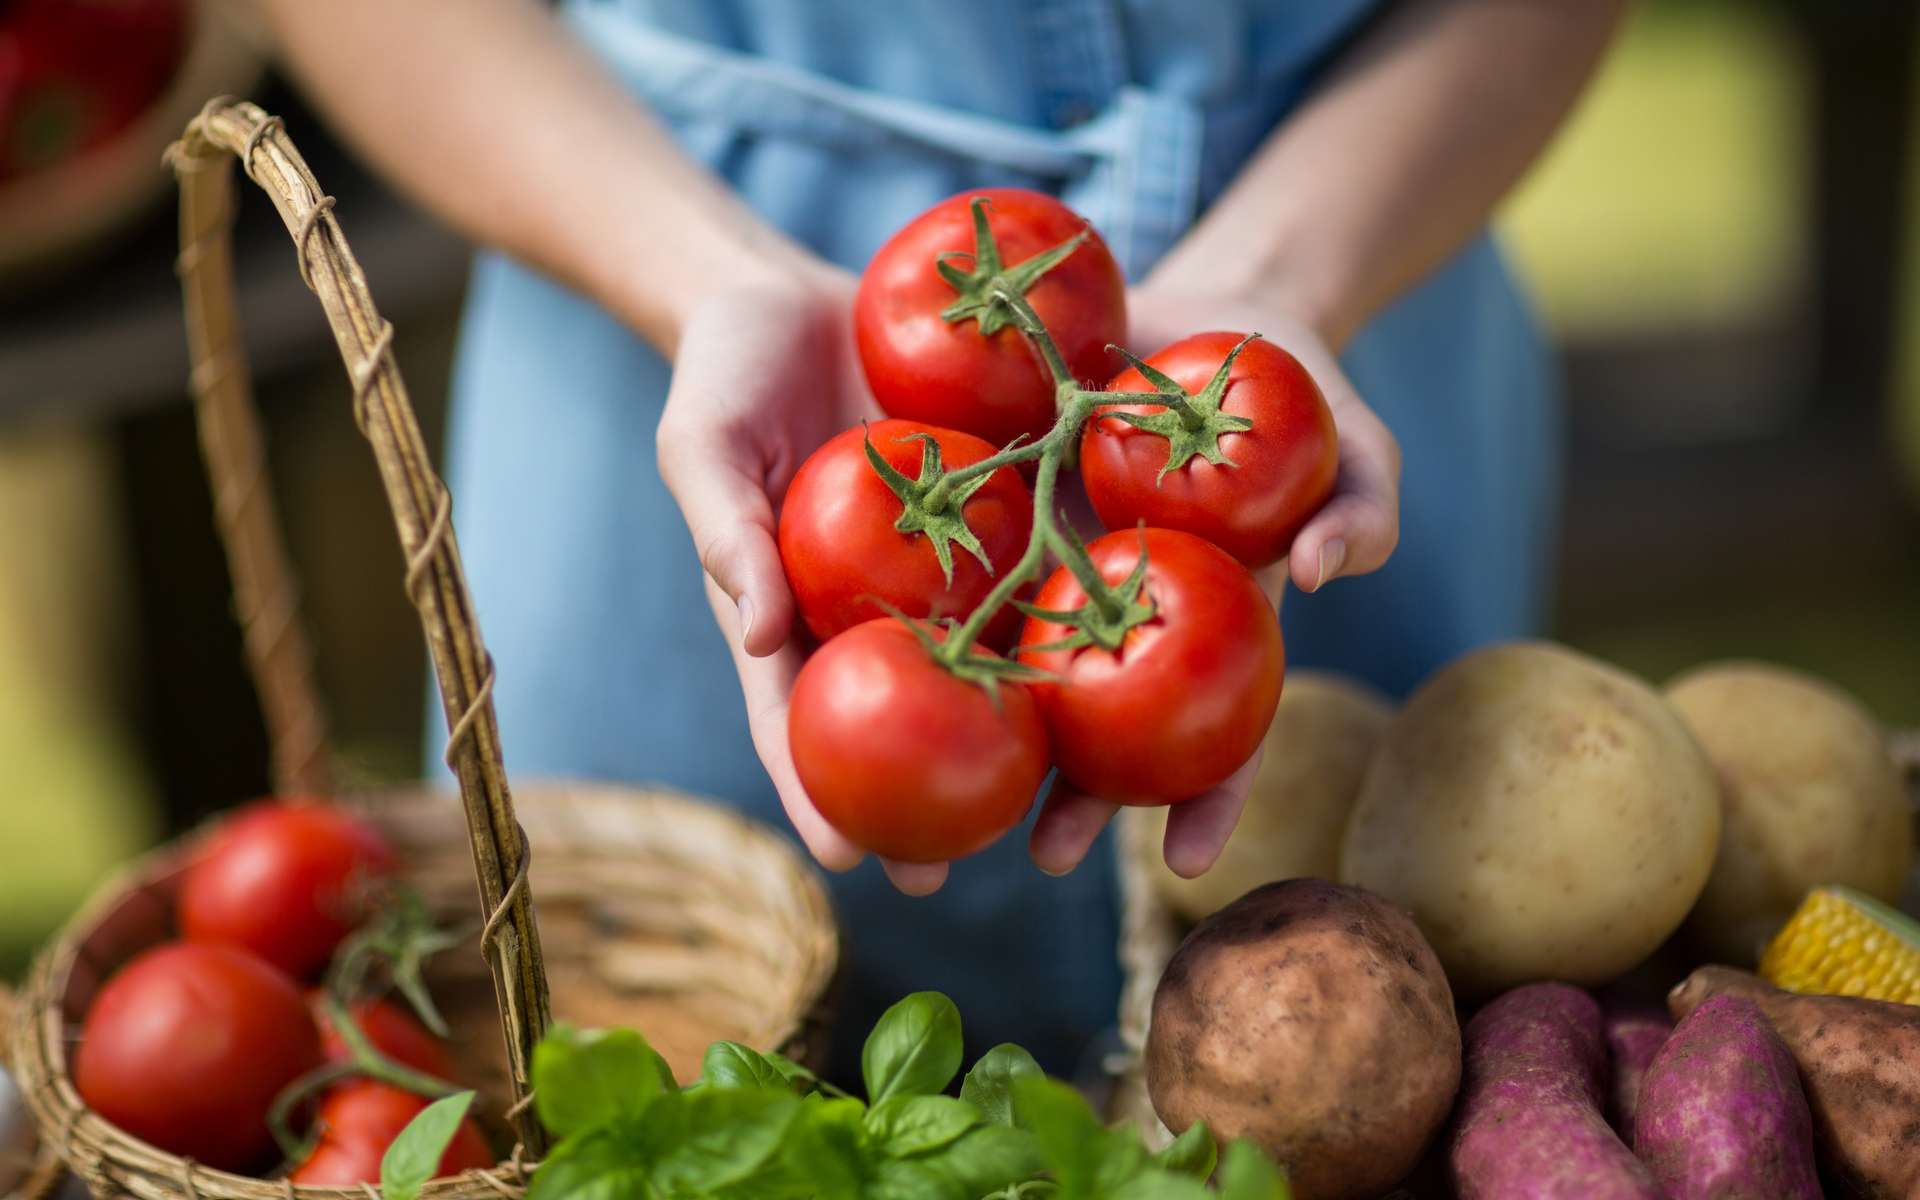 Les tomates et les patates pourraient contenir les futures molécules anti-cancer